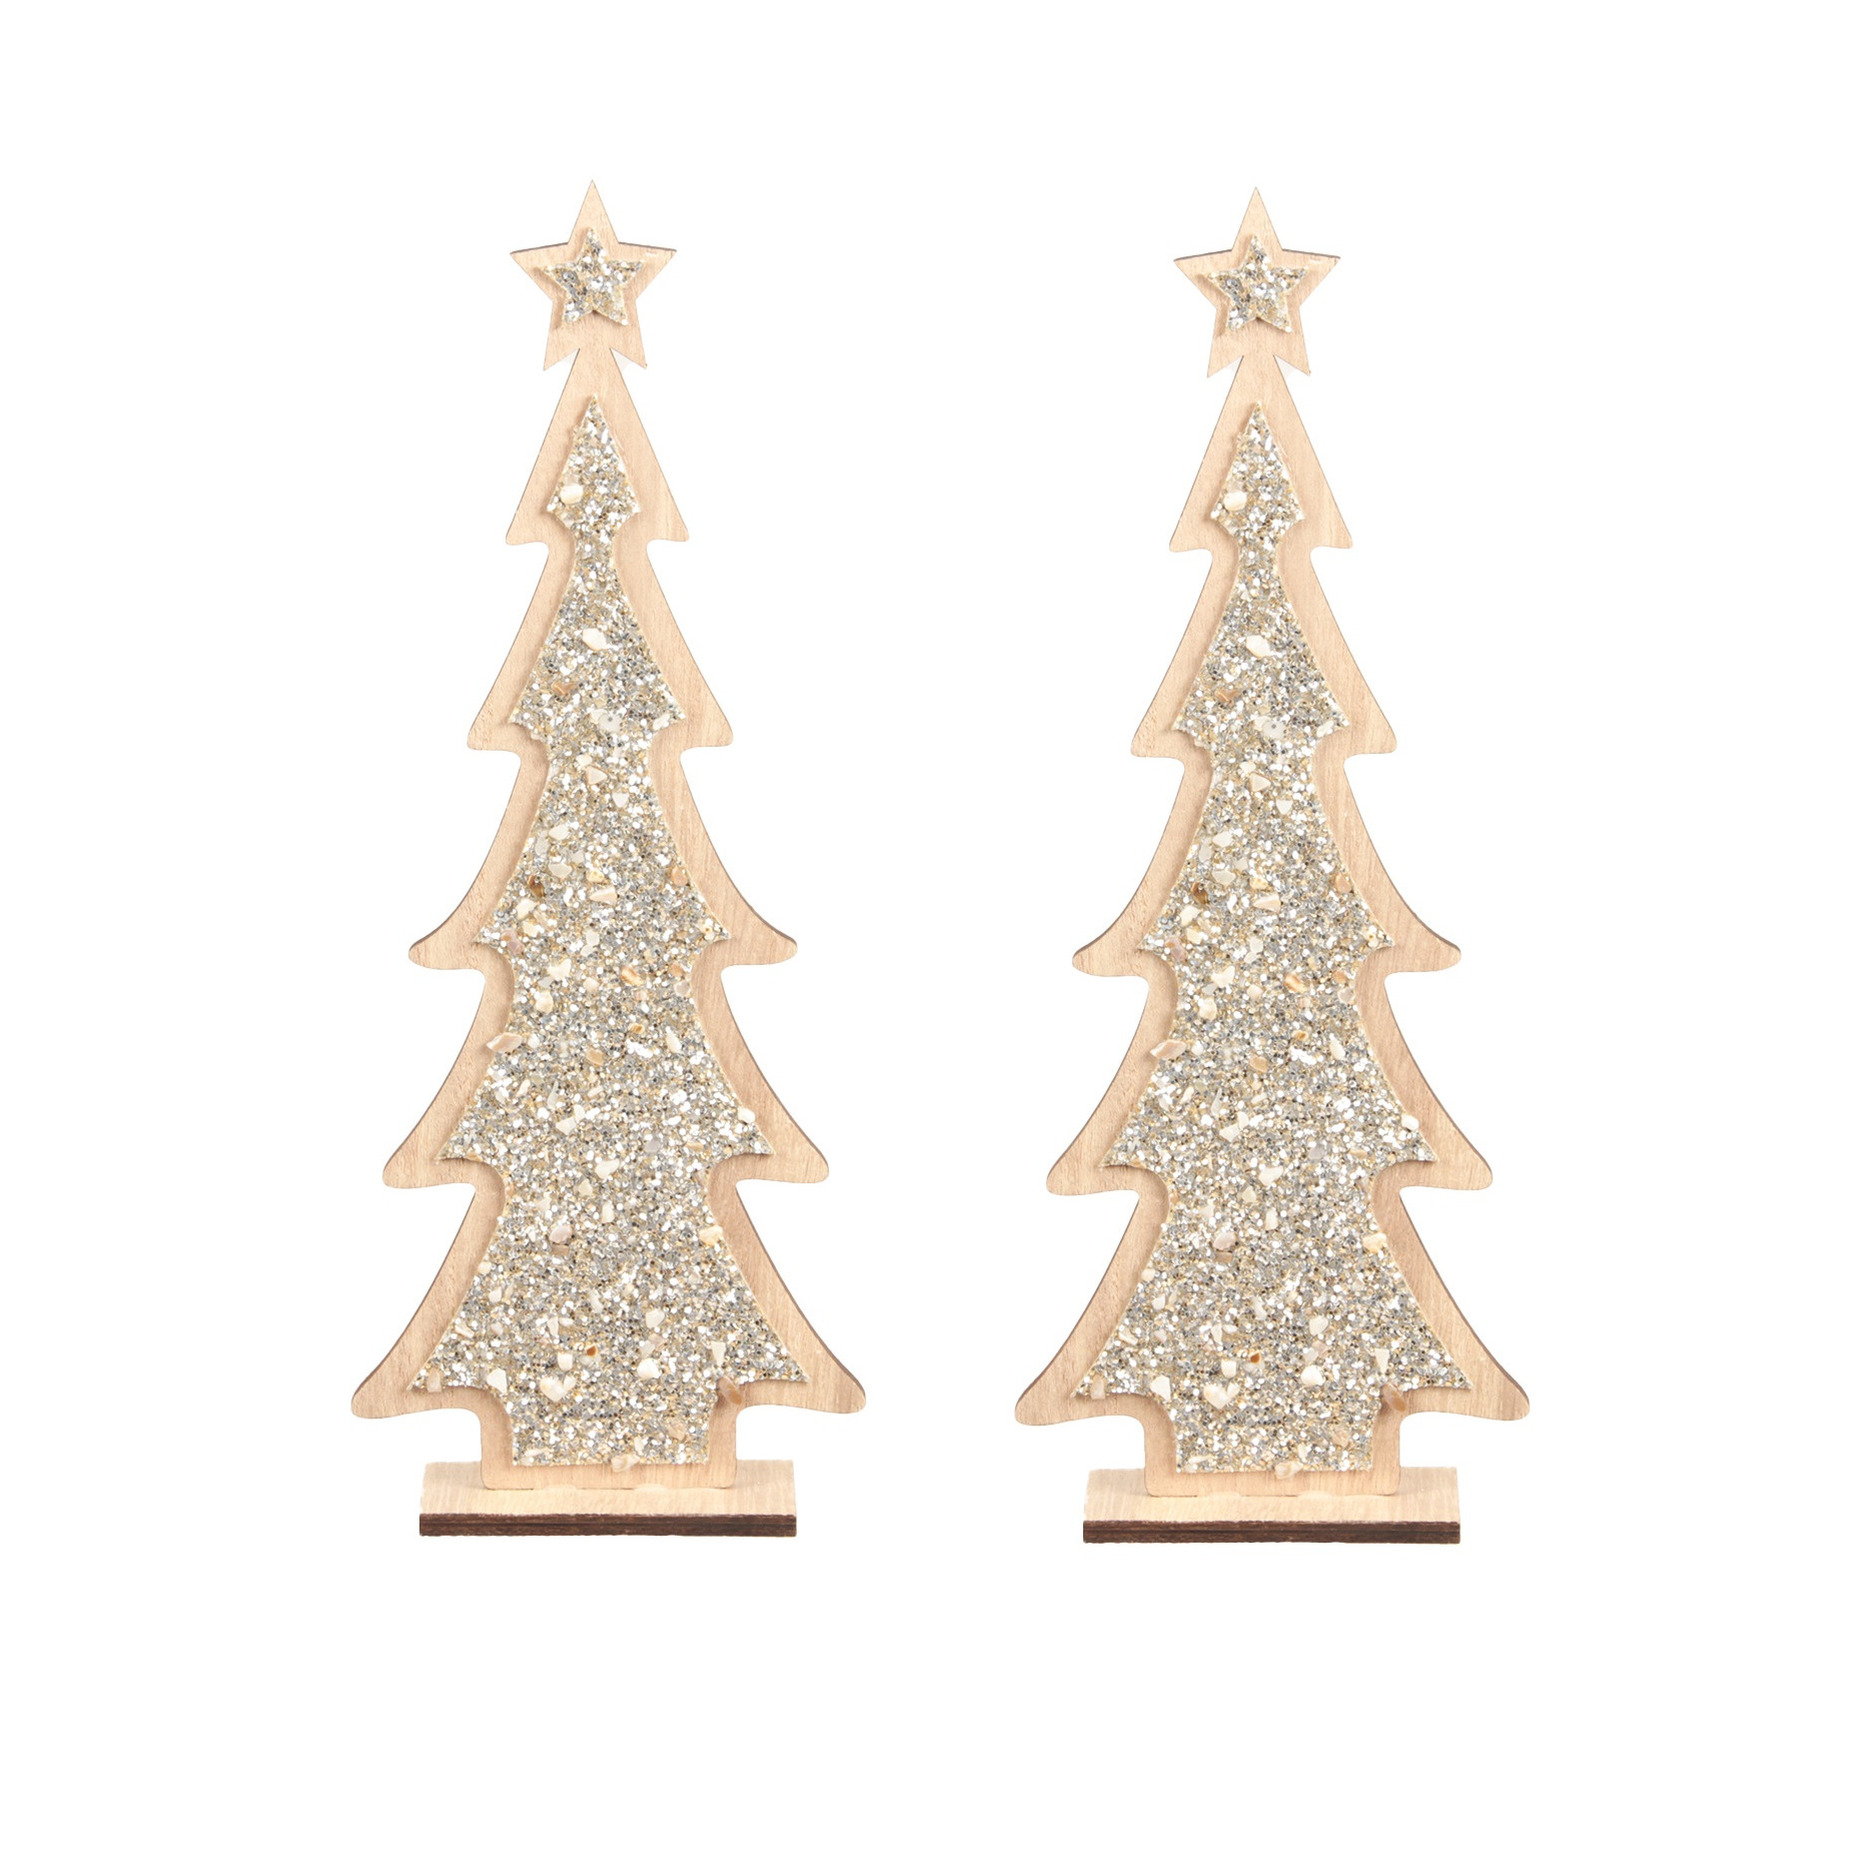 2x stuks kerstdecoratie houten kerstboom glitter zilver 35,5 cm decoratie kerstbomen